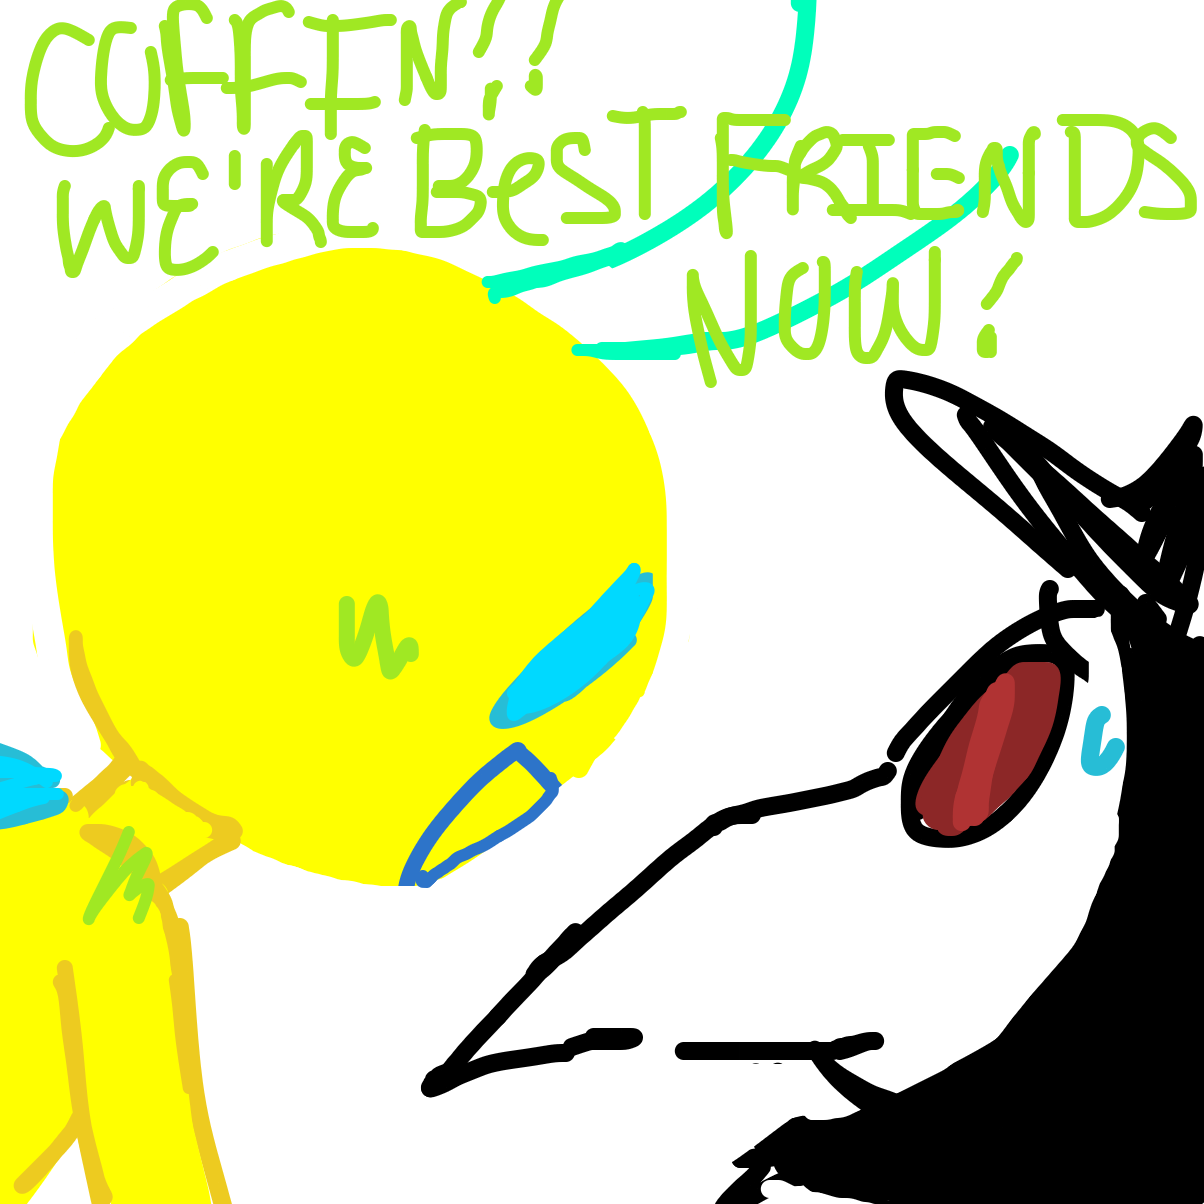 Liked webcomic BEST friends 